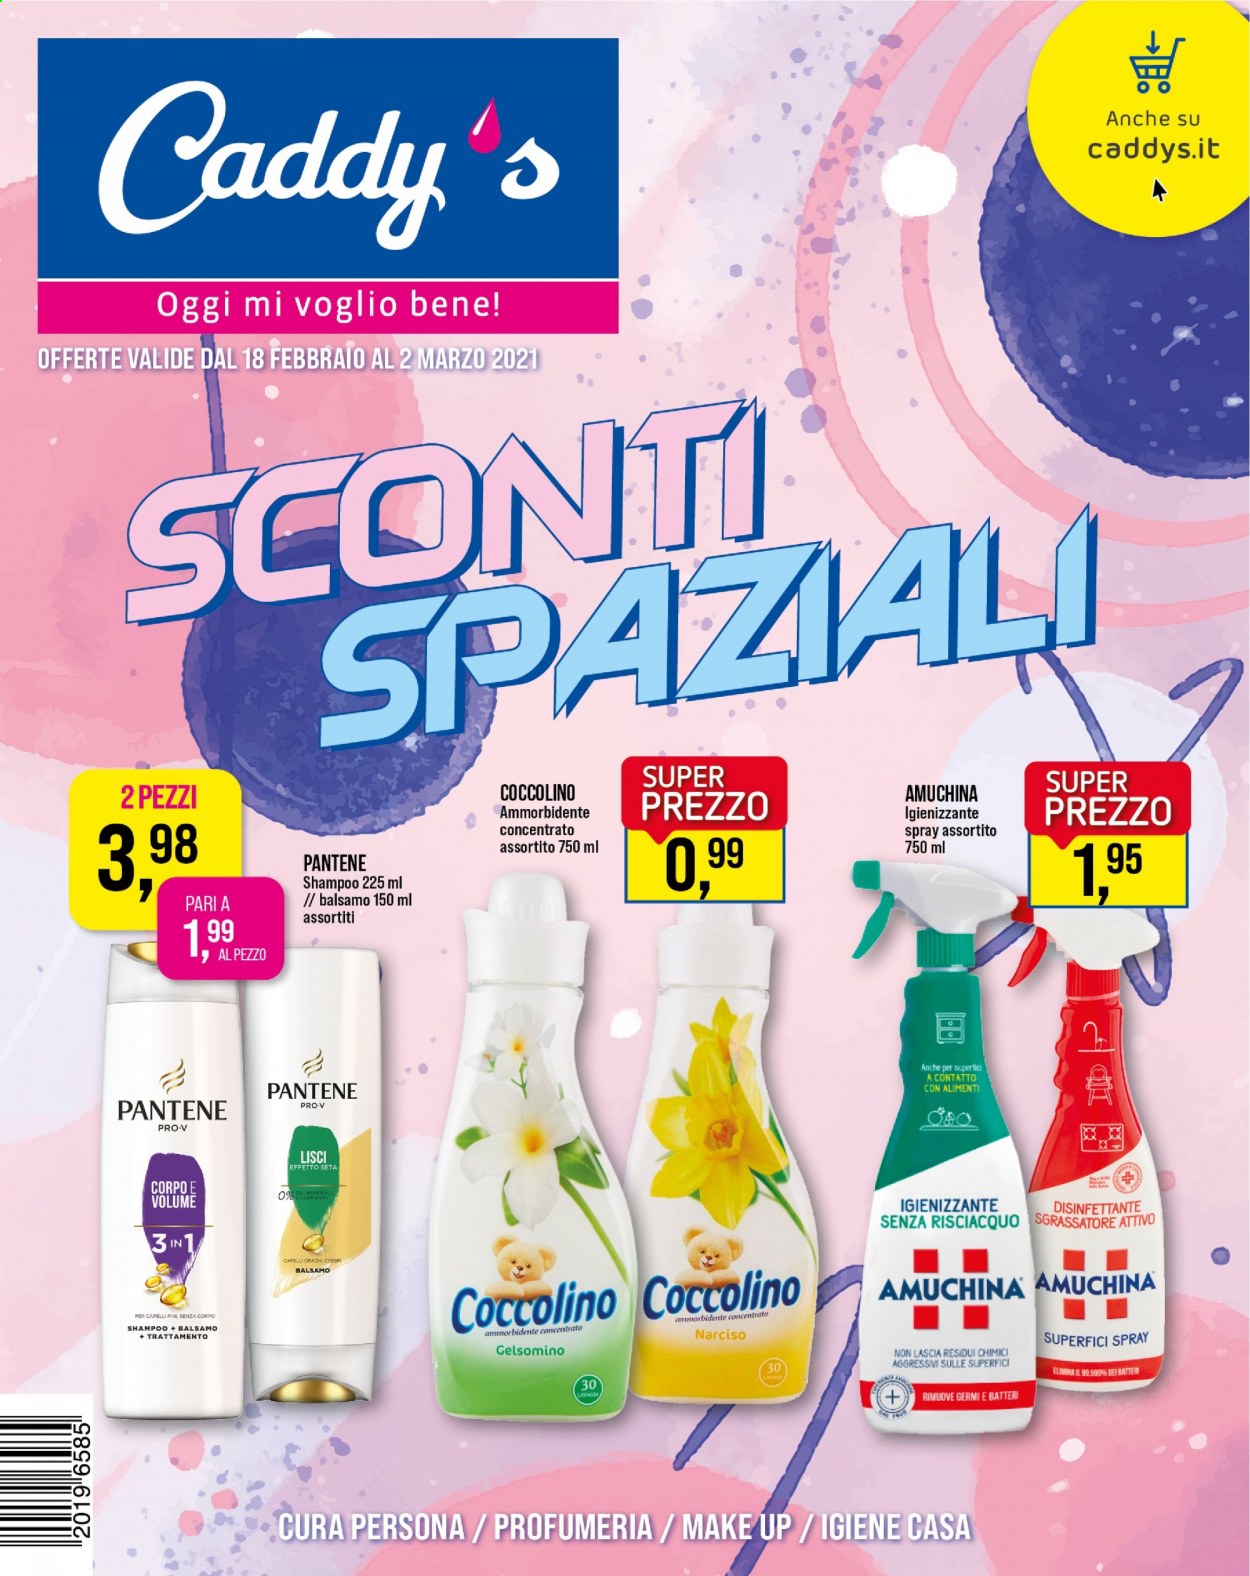 thumbnail - Volantino Caddy's - 18/2/2021 - 2/3/2021 - Prodotti in offerta - sgrassatore, igienizzante, ammorbidente, Coccolino, shampoo, Pantene, Amuchina. Pagina 1.